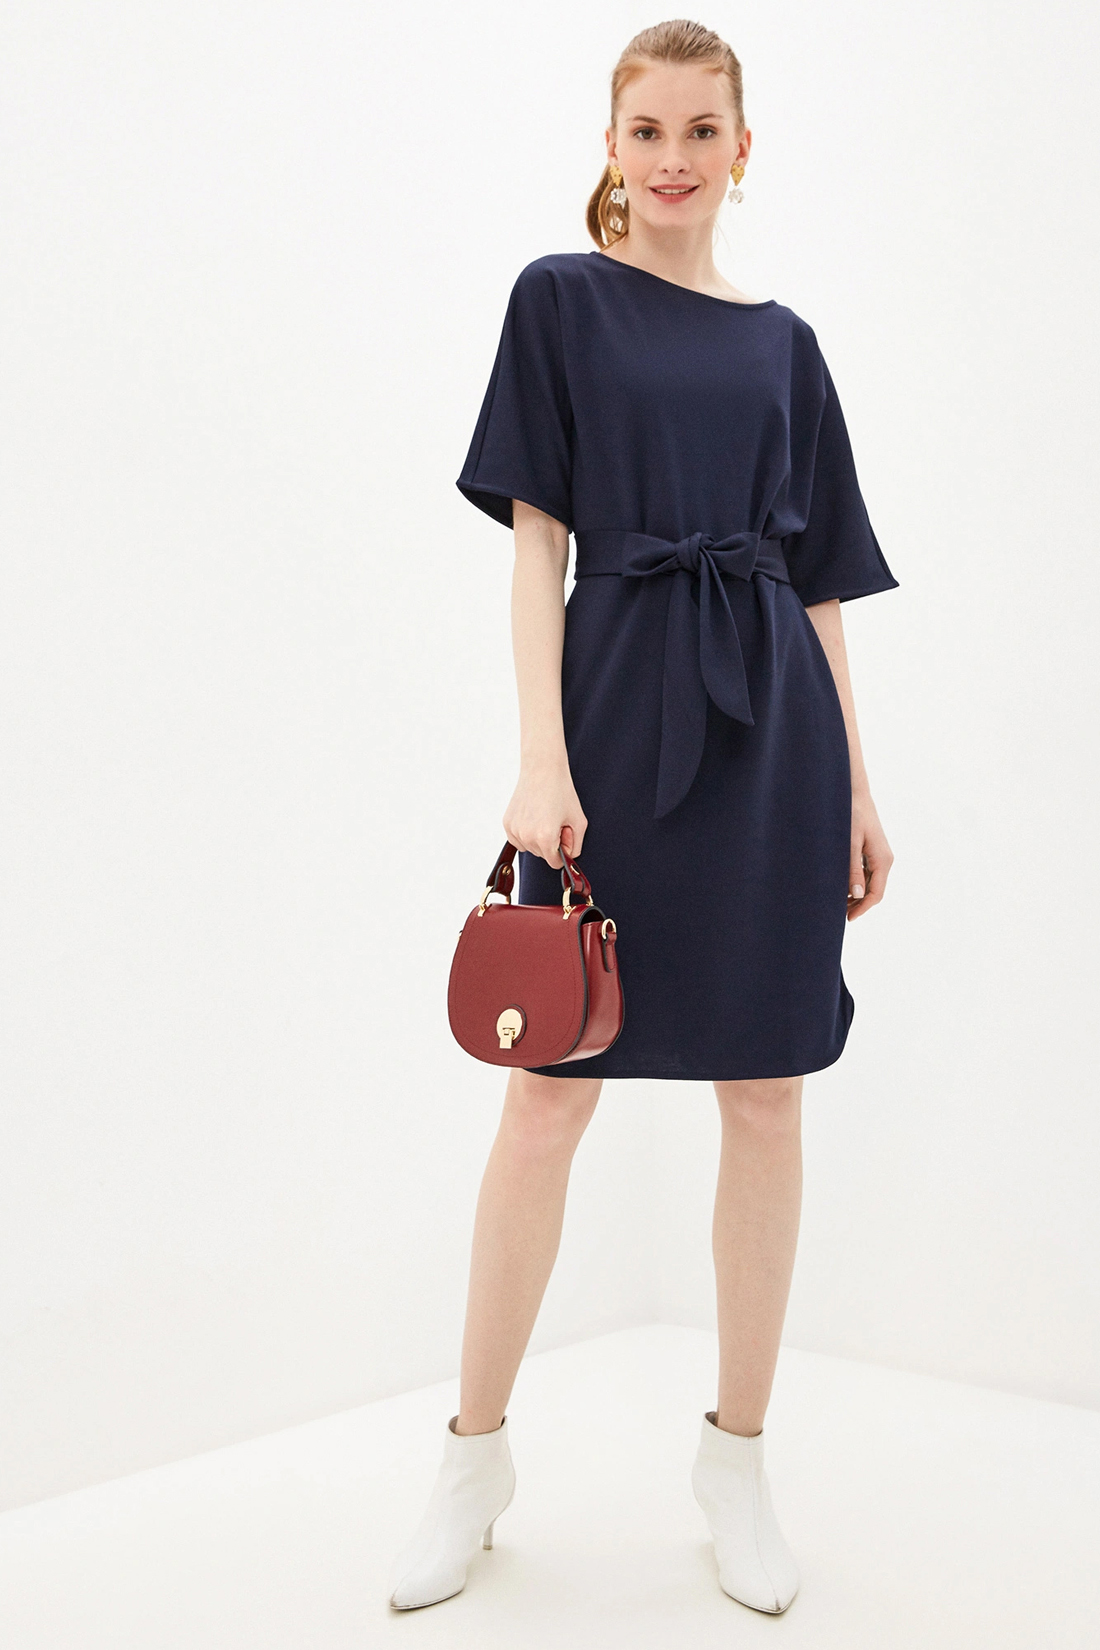 Платье с поясом (арт. baon B450021), размер XL, цвет синий Платье с поясом (арт. baon B450021) - фото 1